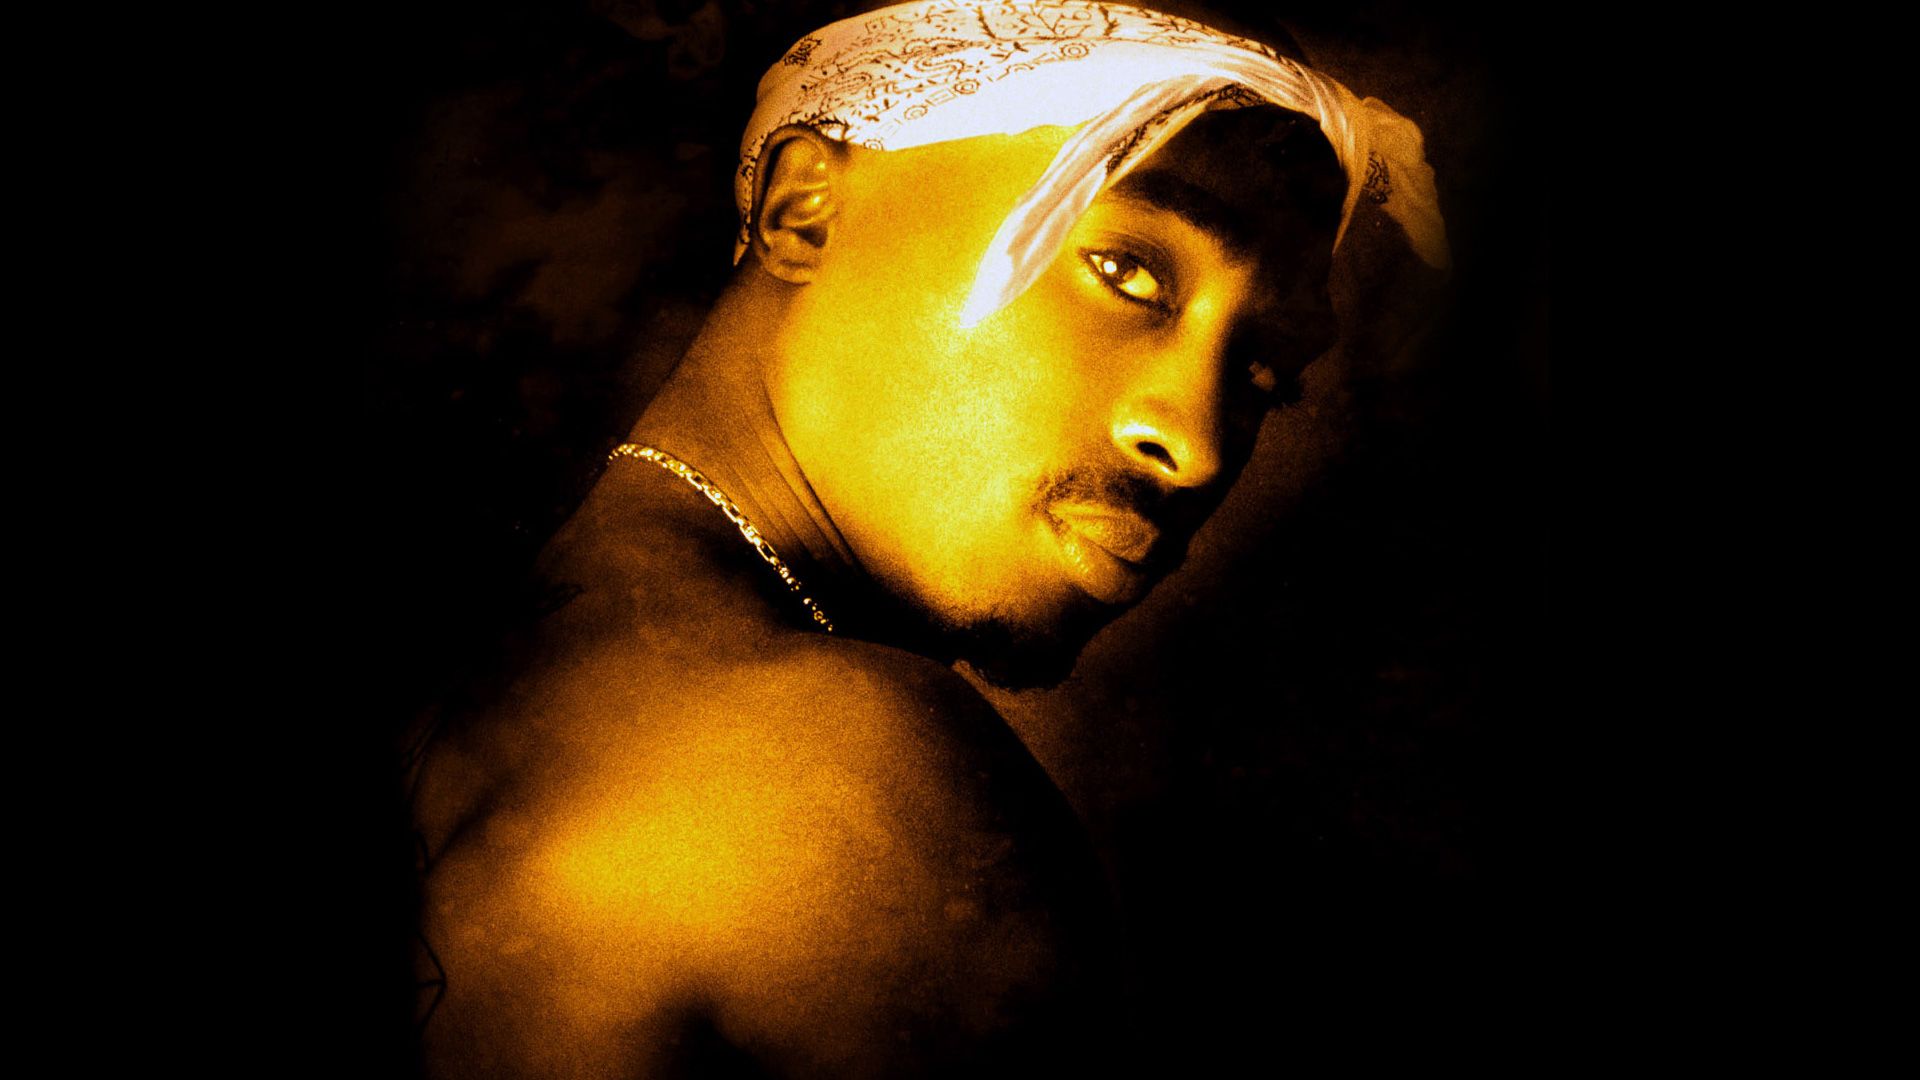 Tupac Background